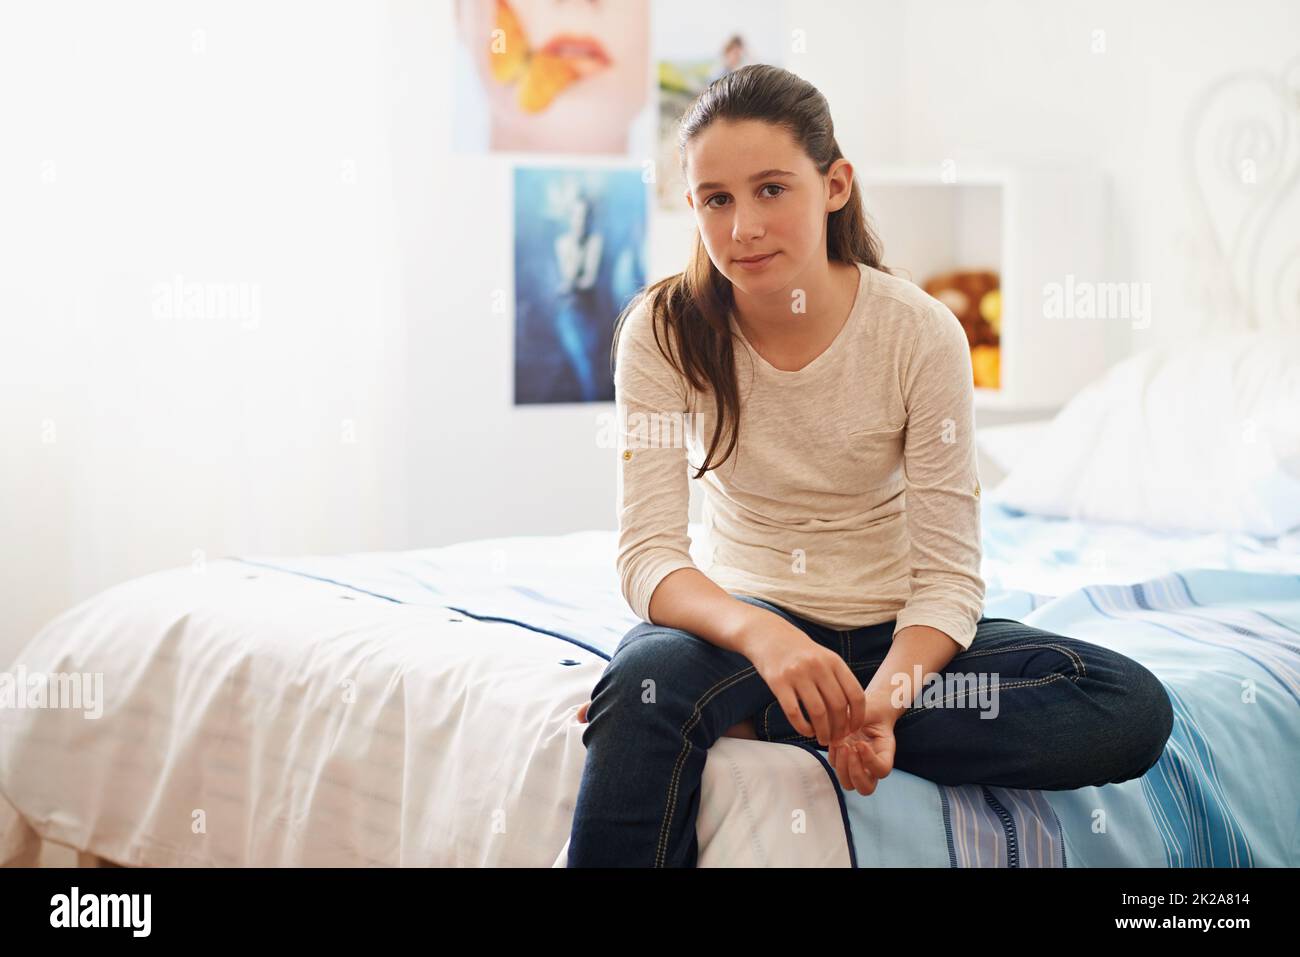 Ein Tag im Leben eines Teenagers. Porträt eines Teenagers, das zu Hause auf ihrem Bett sitzt. Stockfoto